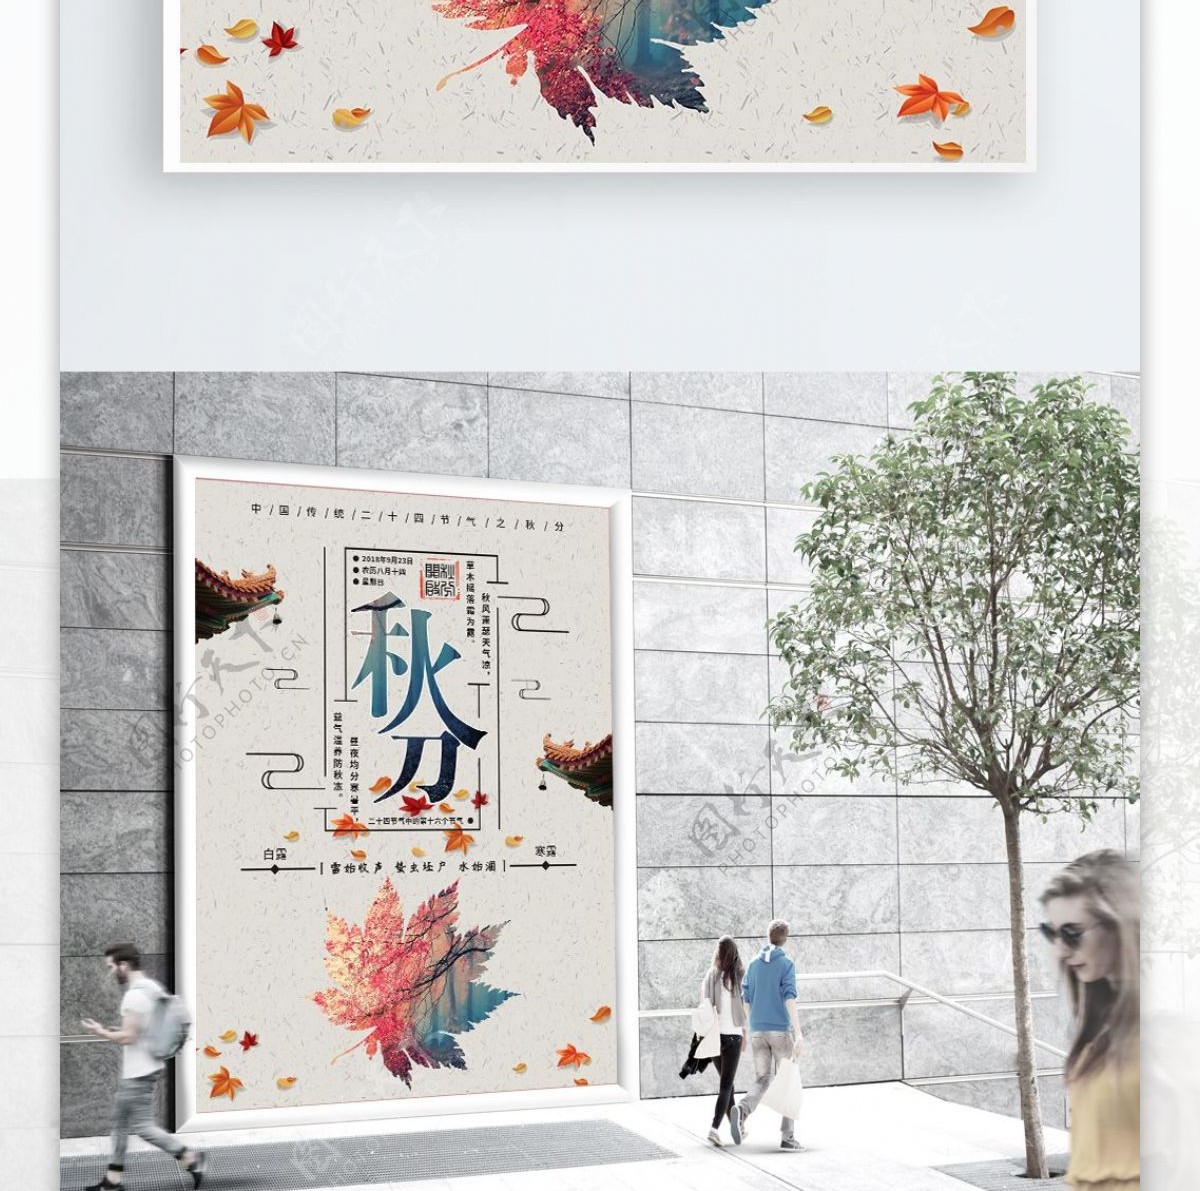 灰白色中国传统二十四节气秋分节日海报